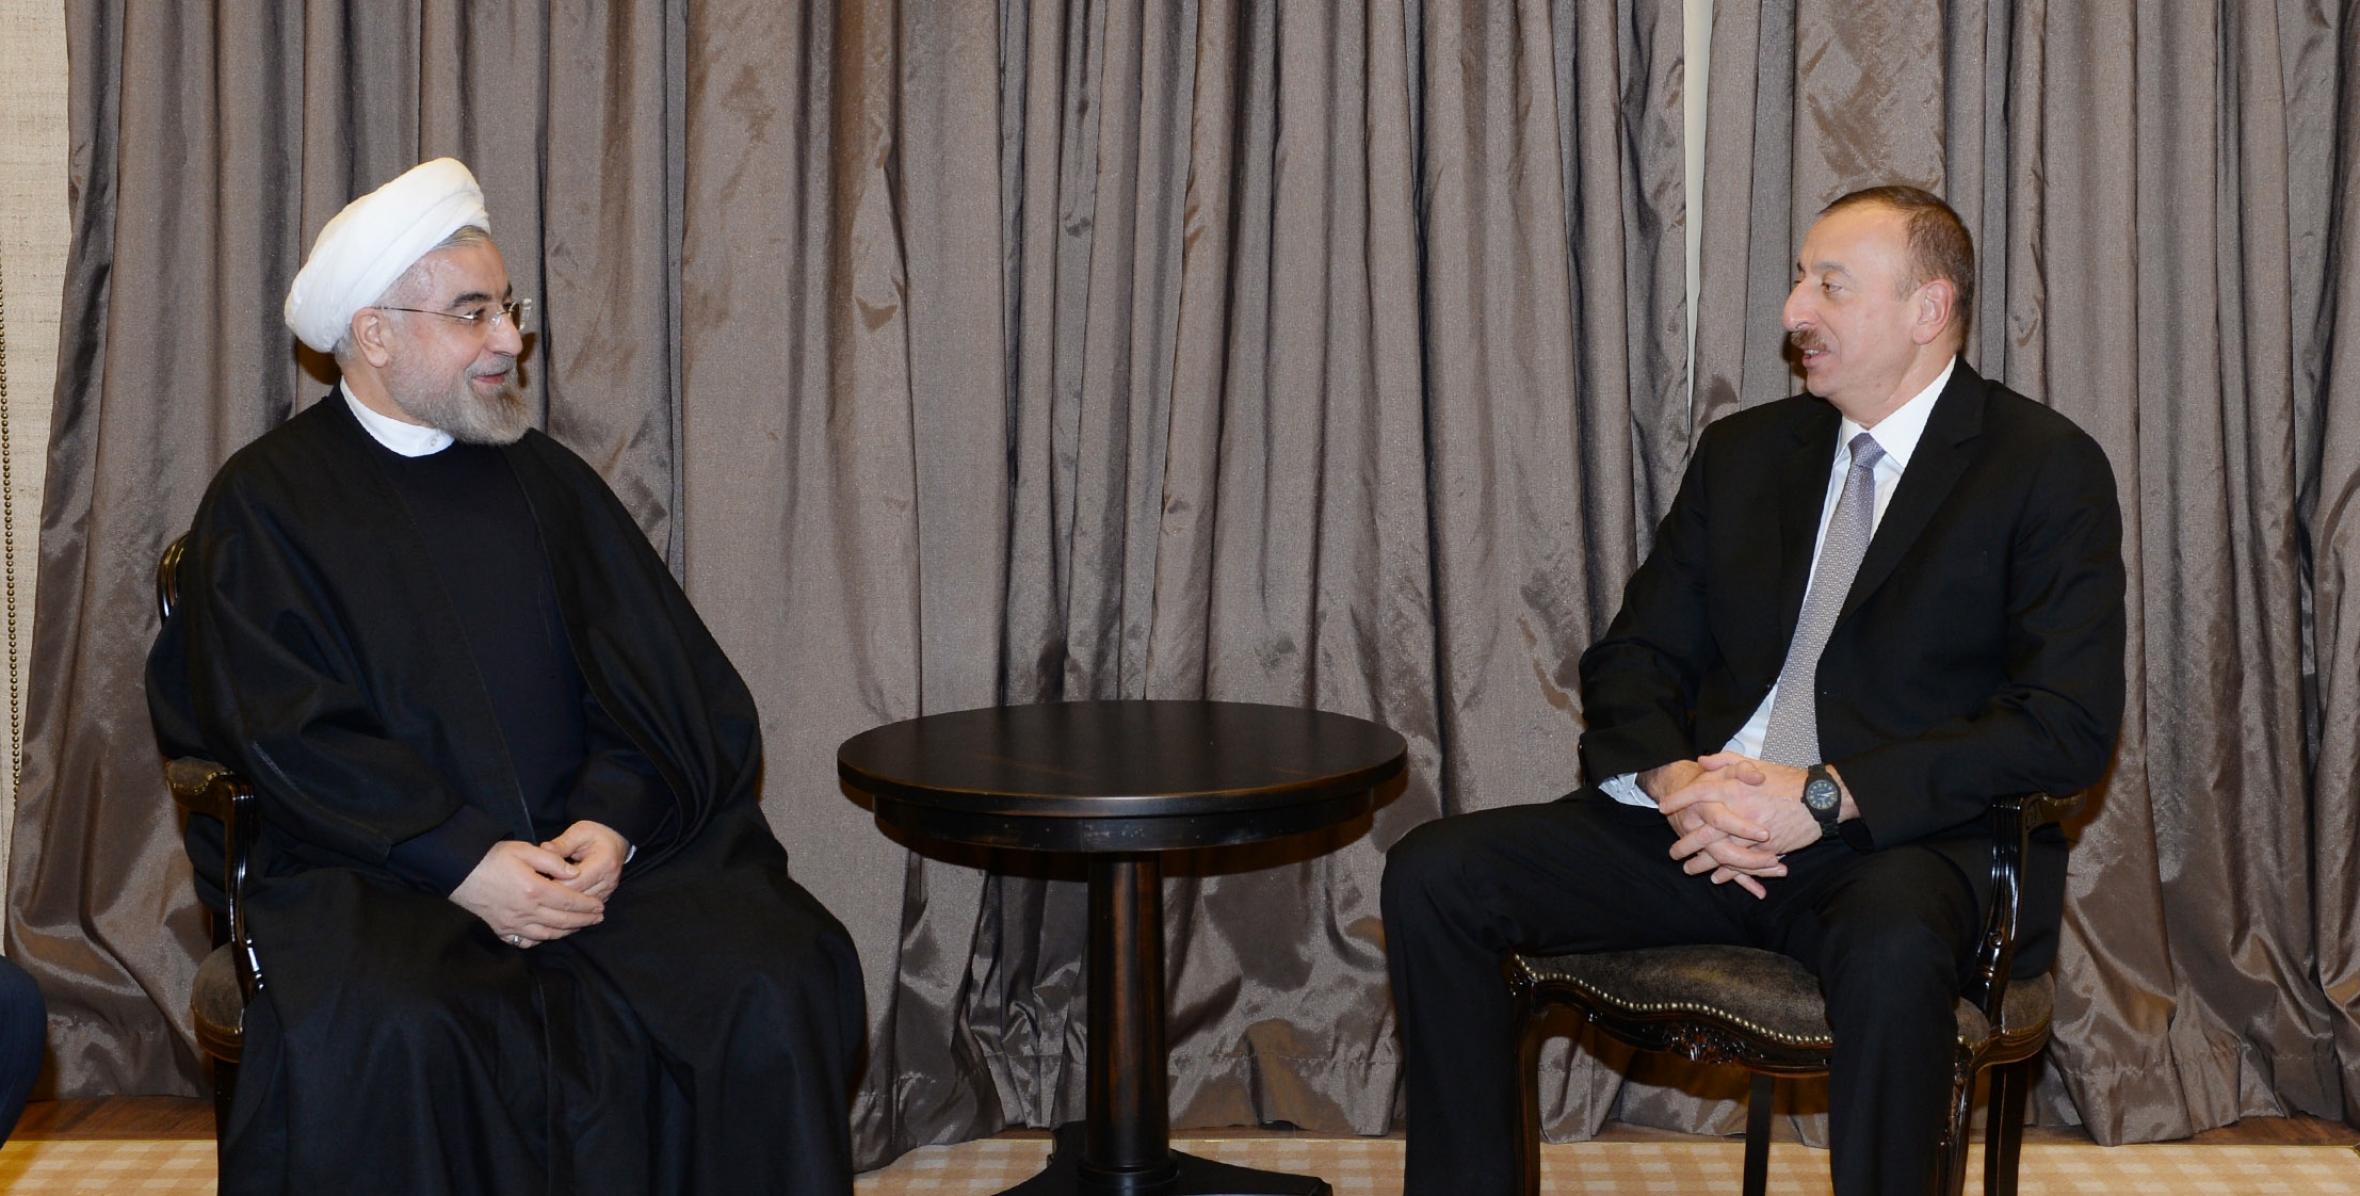 Состоялась встреча Ильхама Алиева и Президента Ирана Хасана Роухани